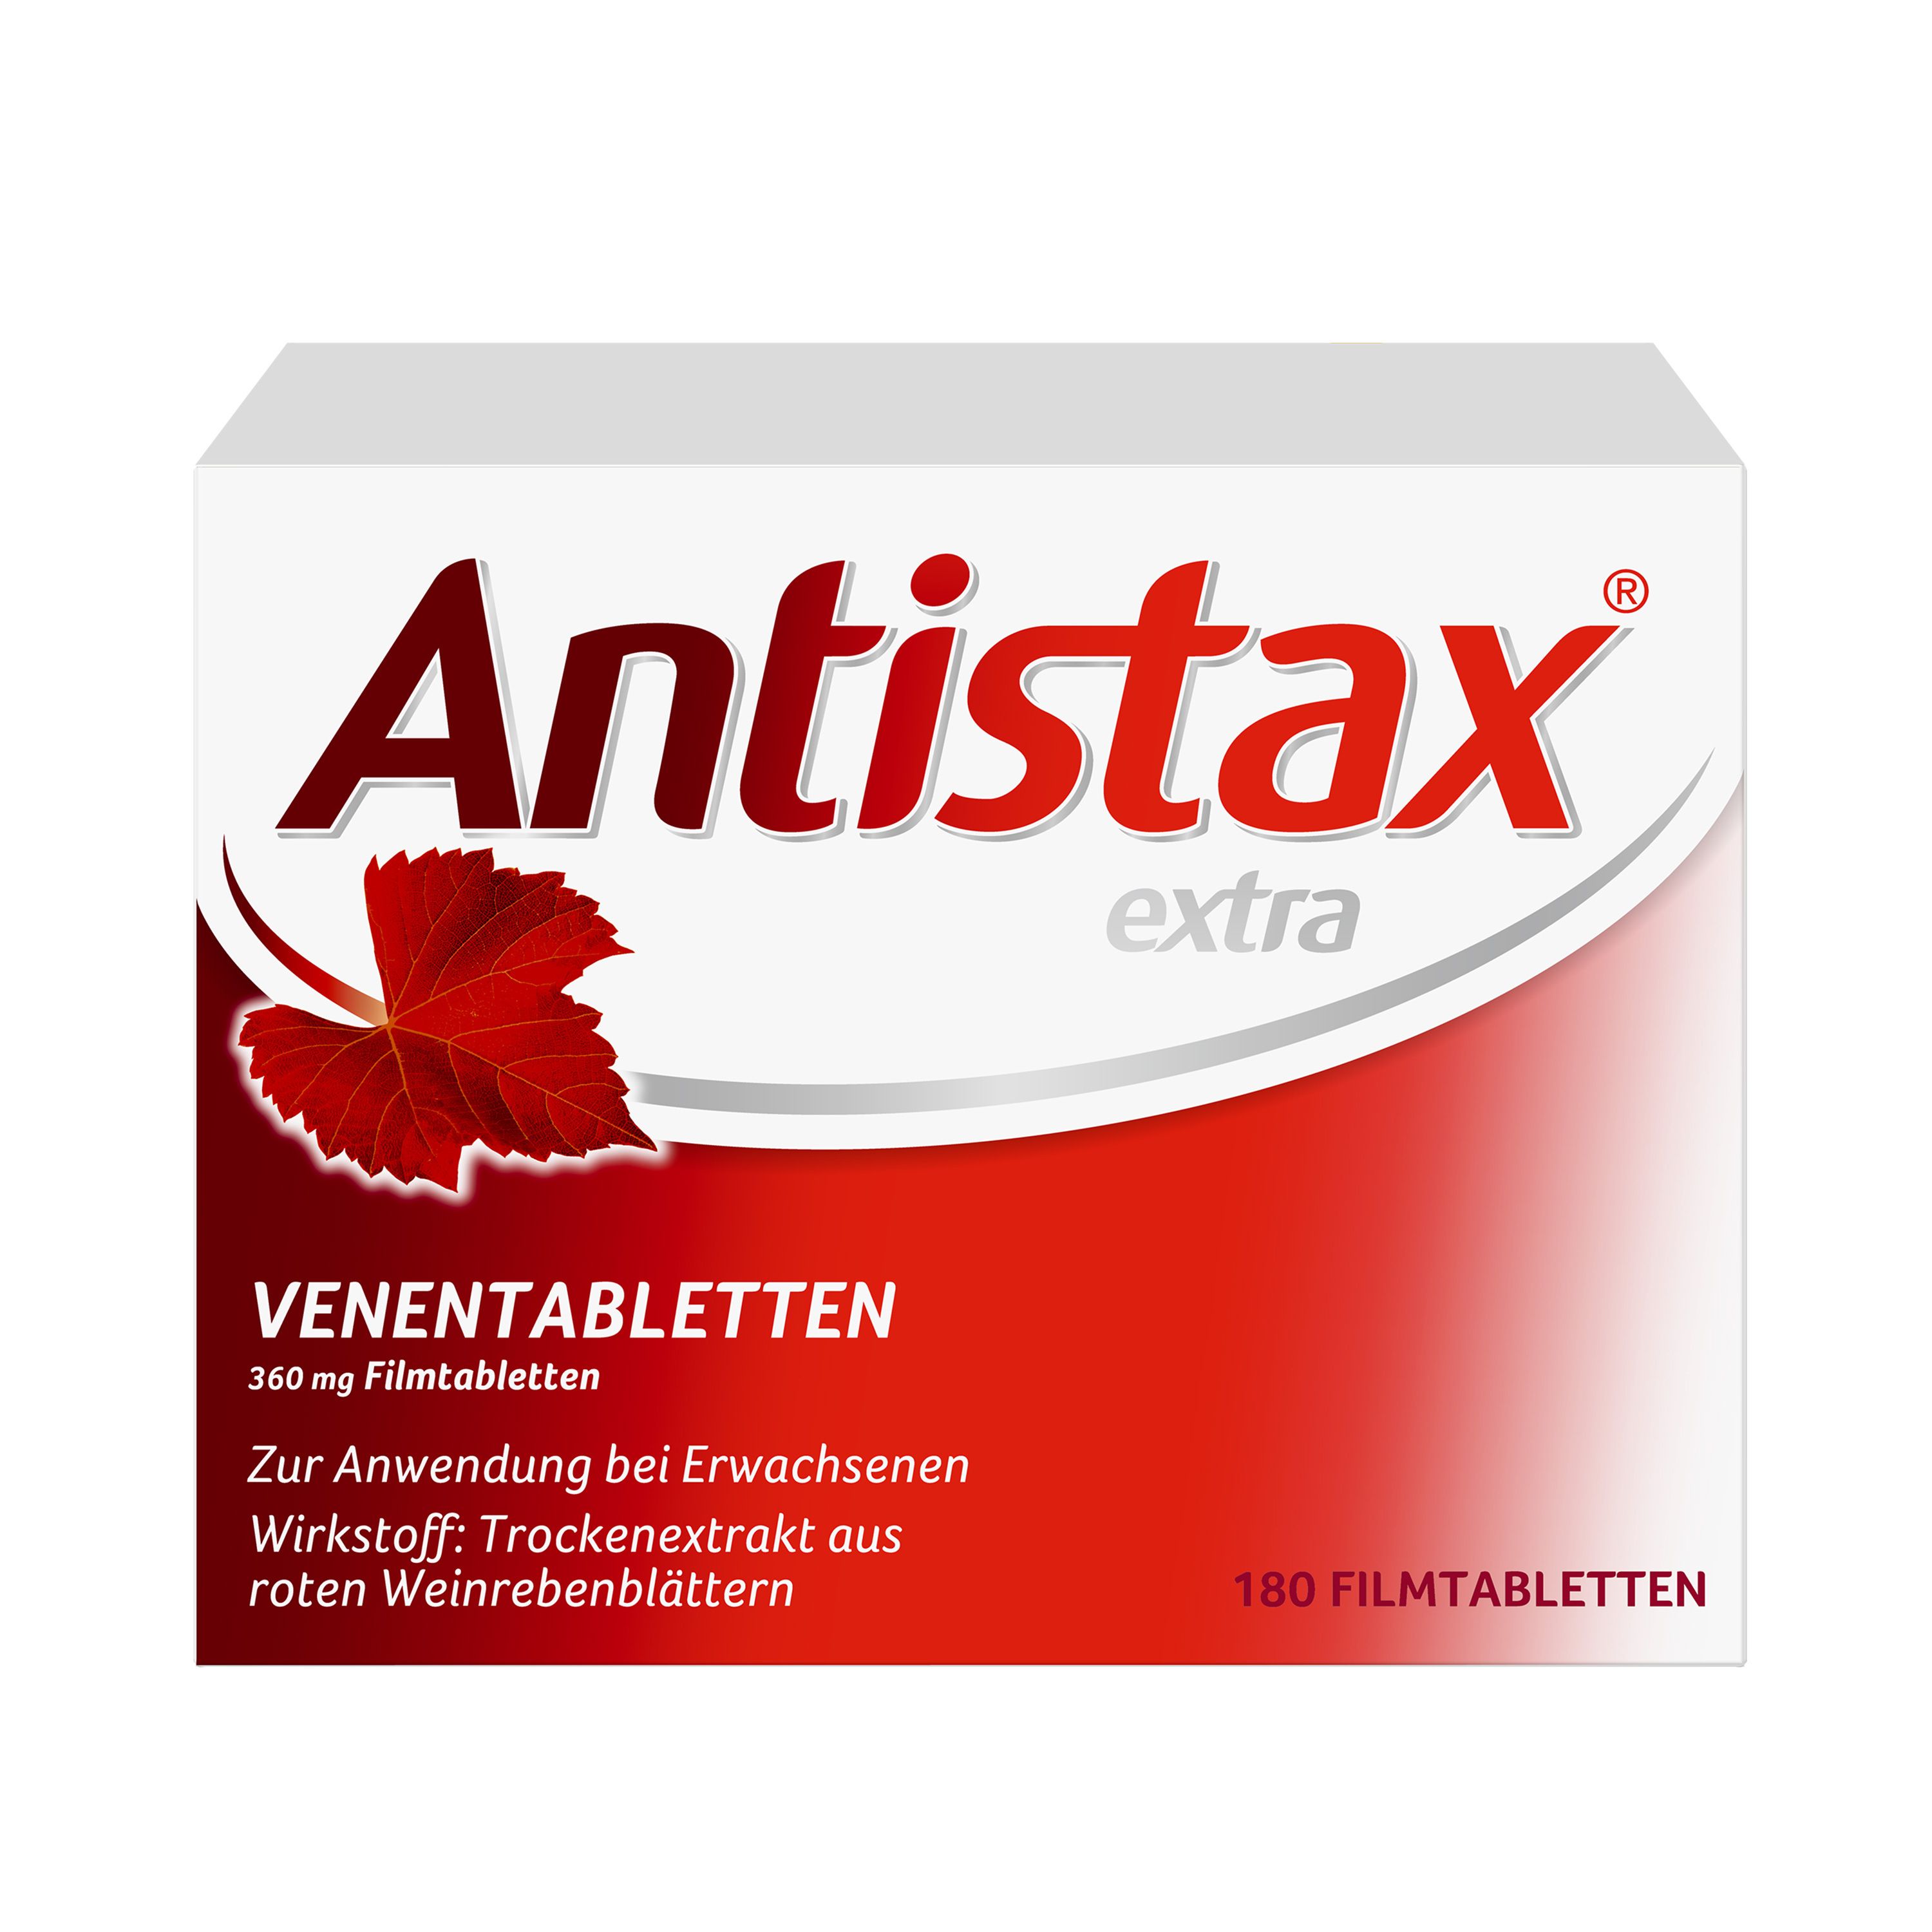 Antistax® extra Venentabletten mit der medizinischen Kraft des Roten Weinlaubs, bei schweren & geschwollenen Beinen, nächtlichen Wadenkrämpfen, Venenschwäche - 5 Euro Cashback